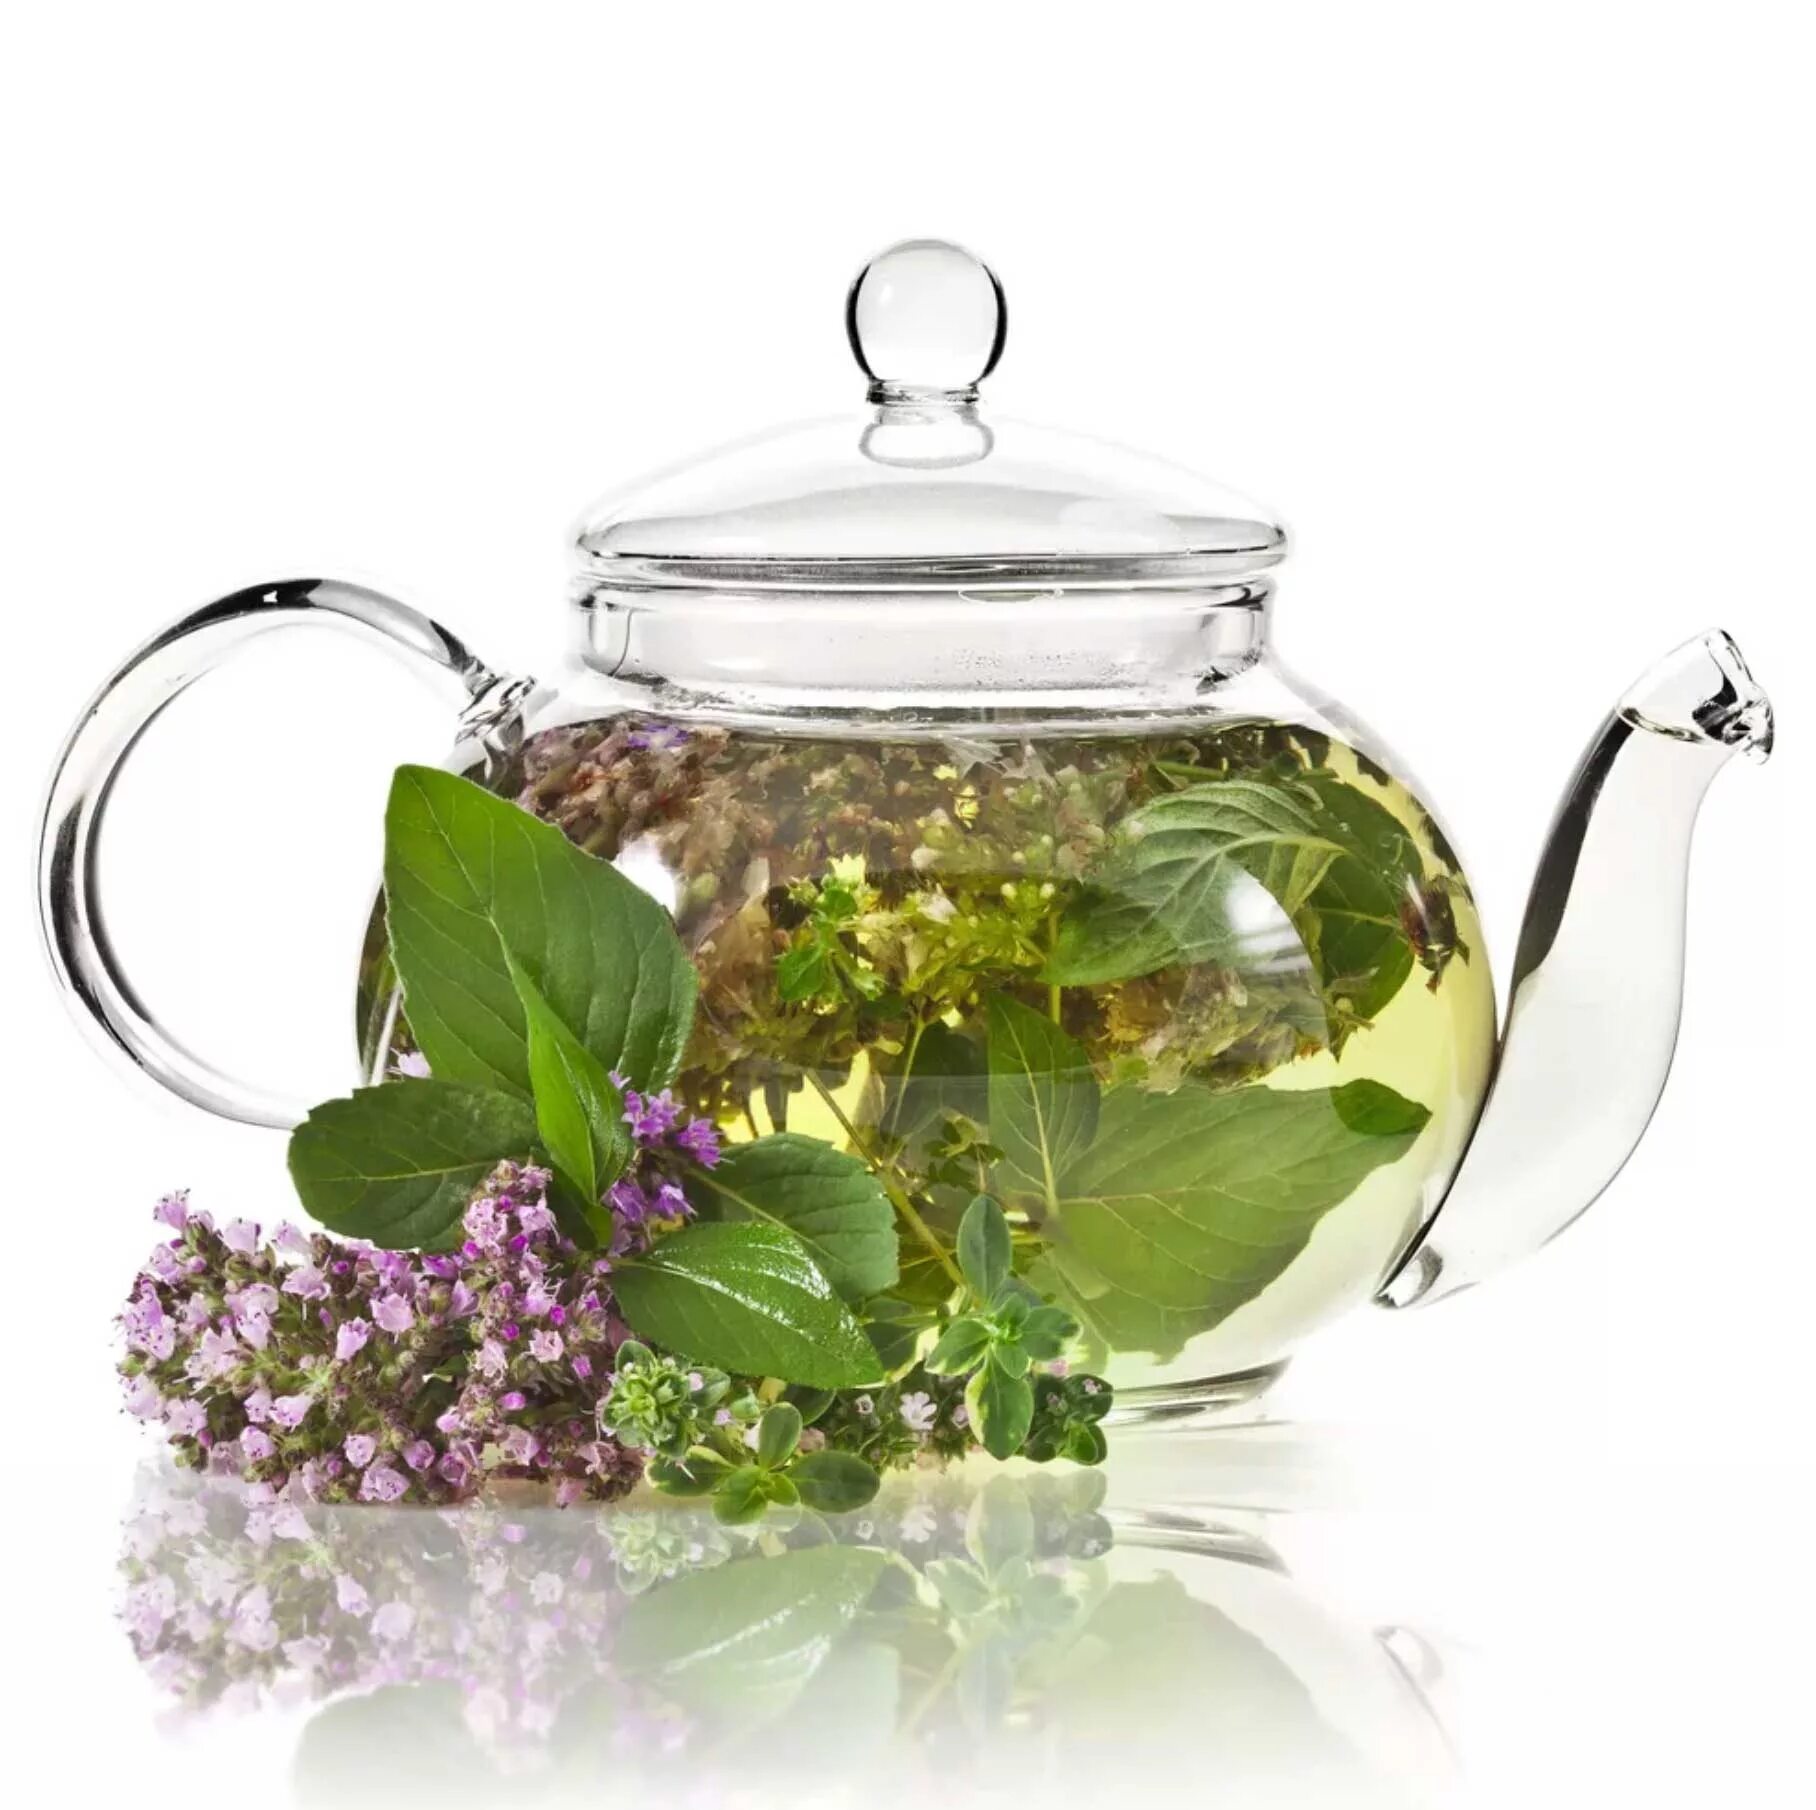 Чай мята душица. Травяной чай чабрец. "Чай травяной" "бадан толстолистный". Чай душица мята. Алтайский травяной чай.